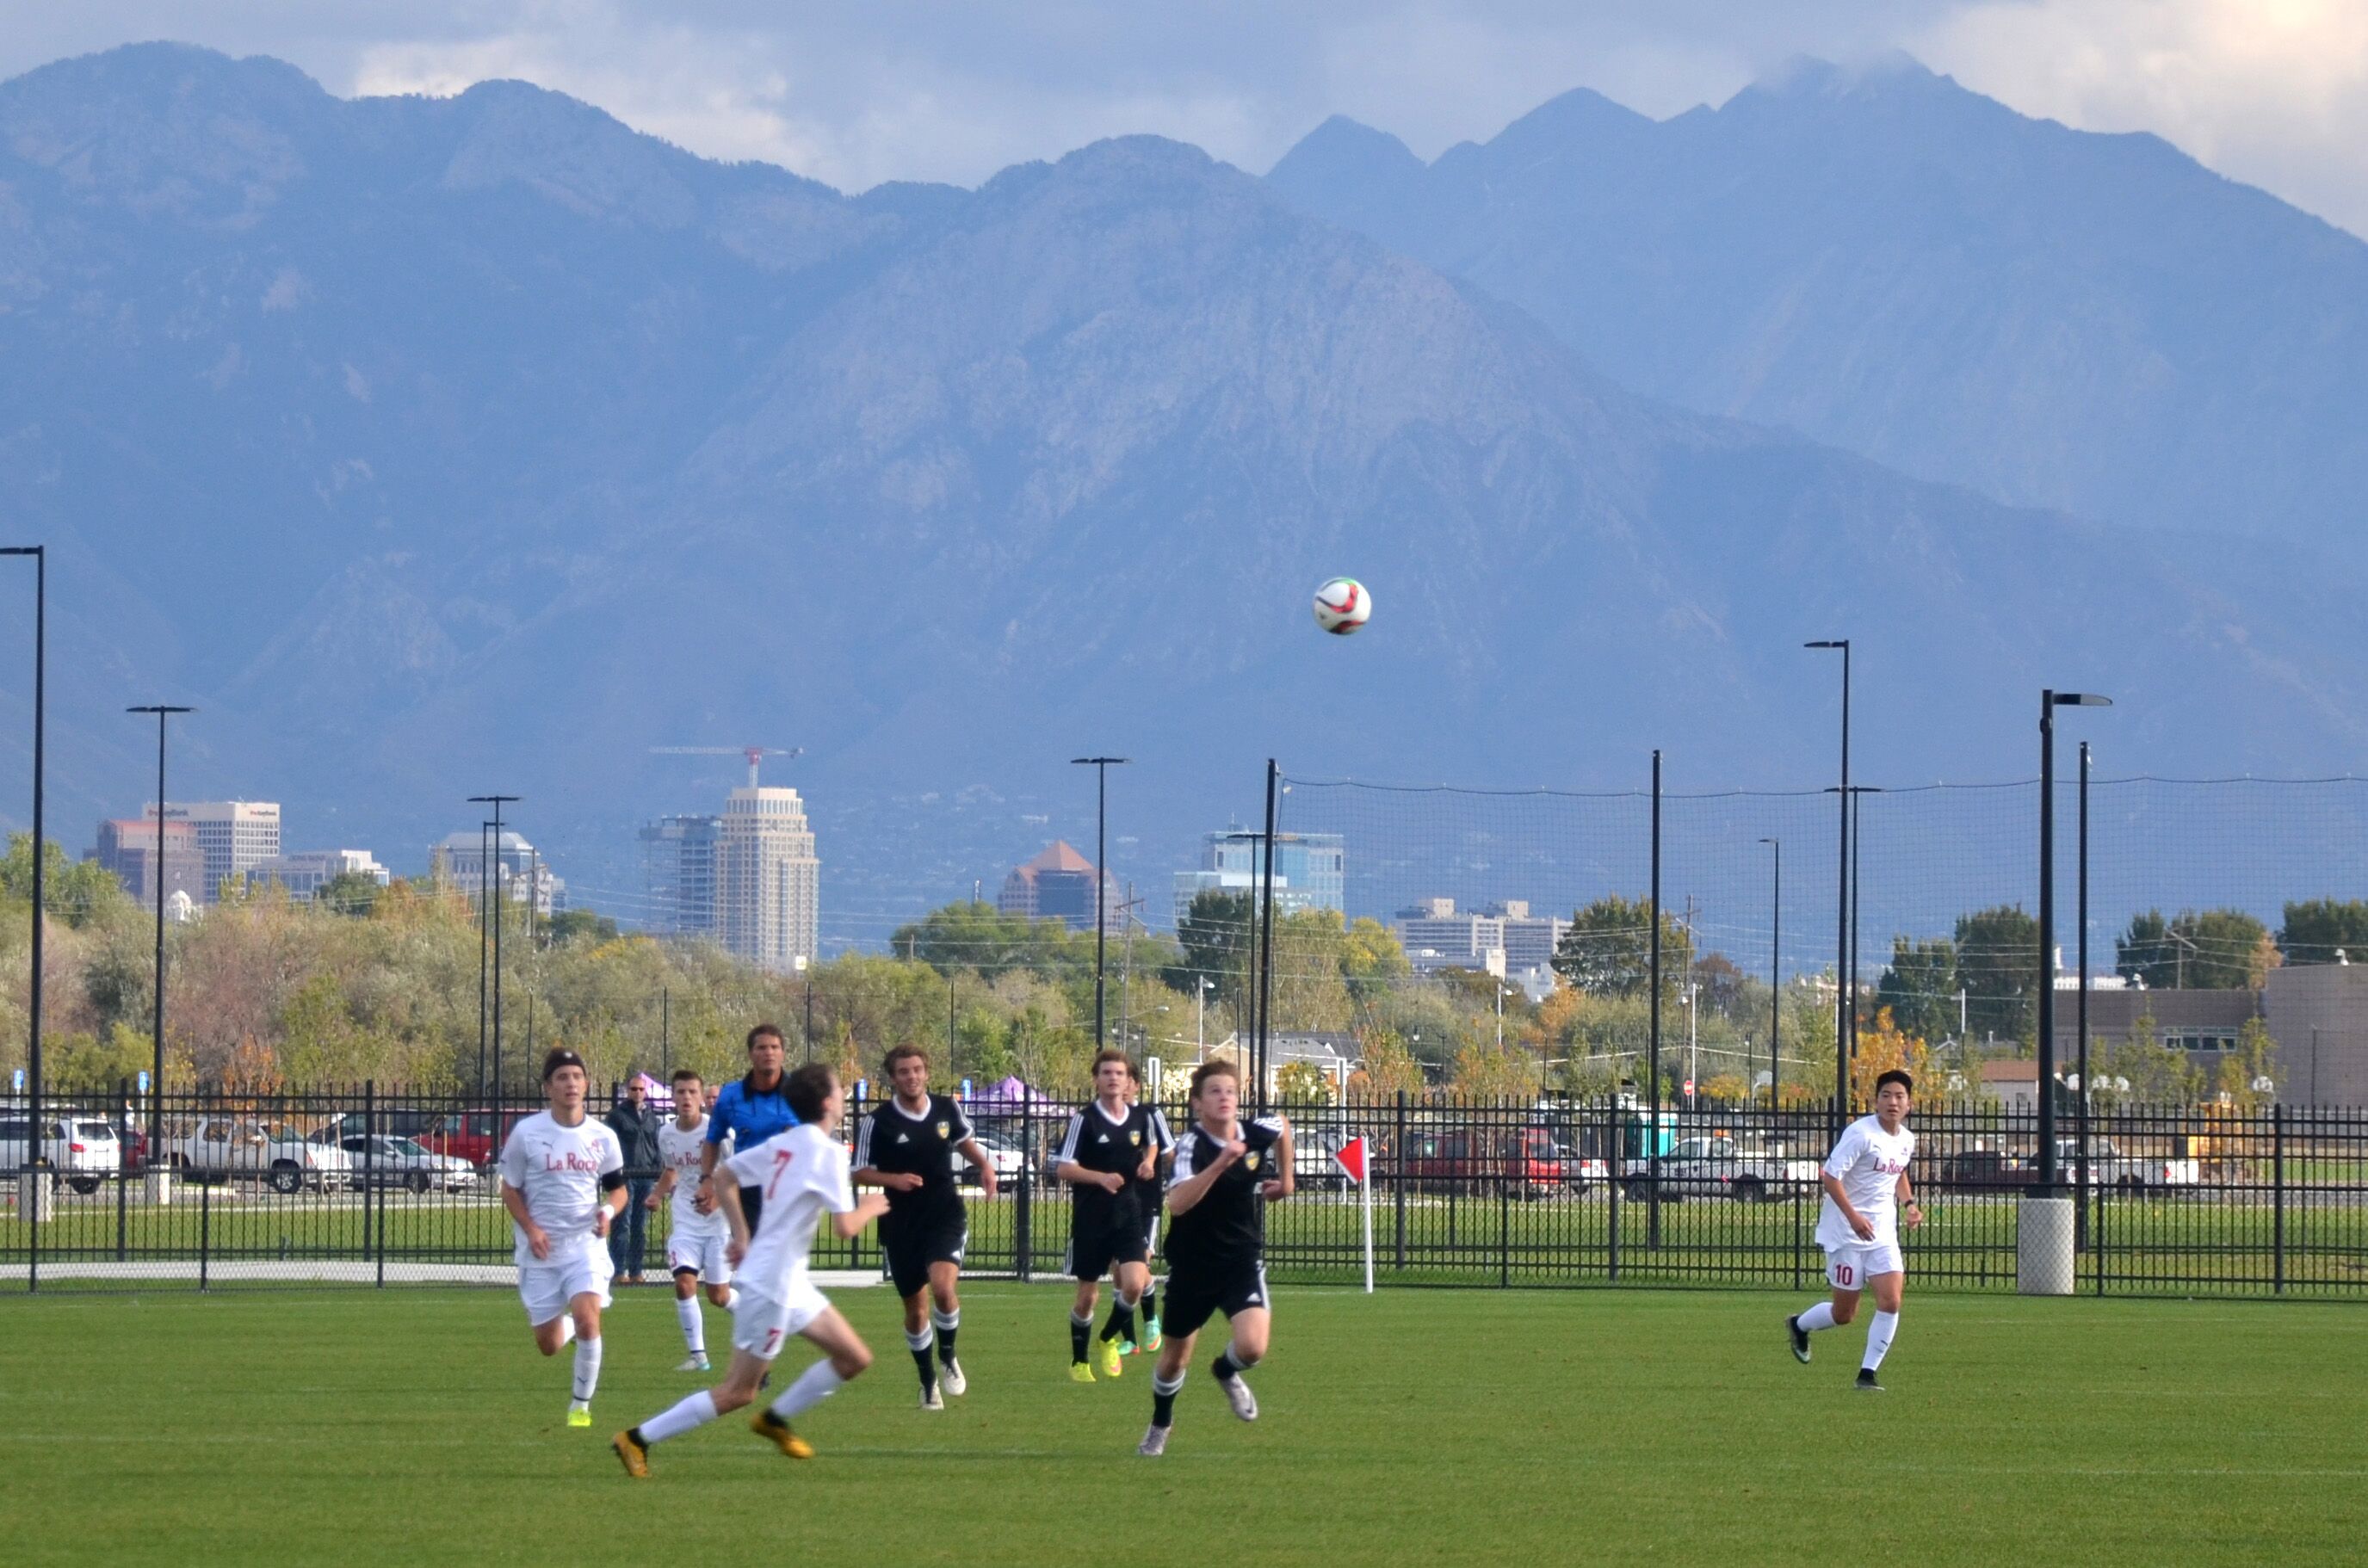 2019 Sports Facilities Guide: Salt Lake, Utah